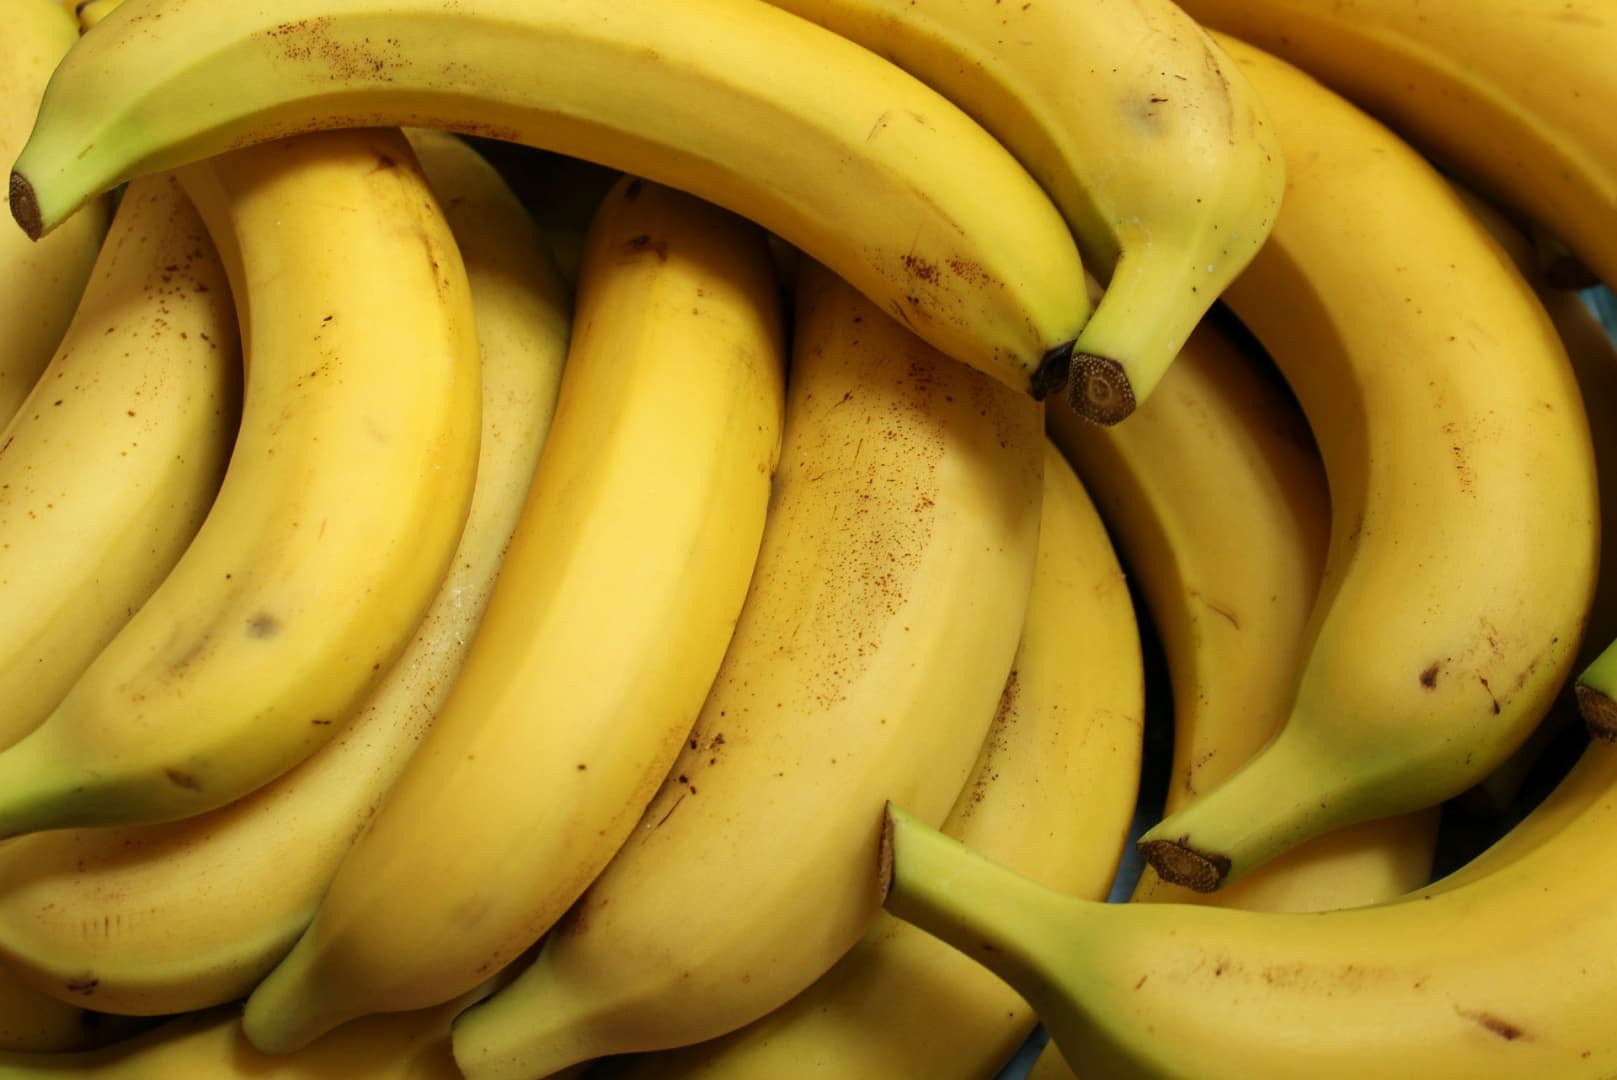 Több mint egy tonna kokaint találtak egy banánszállítmányba rejtve